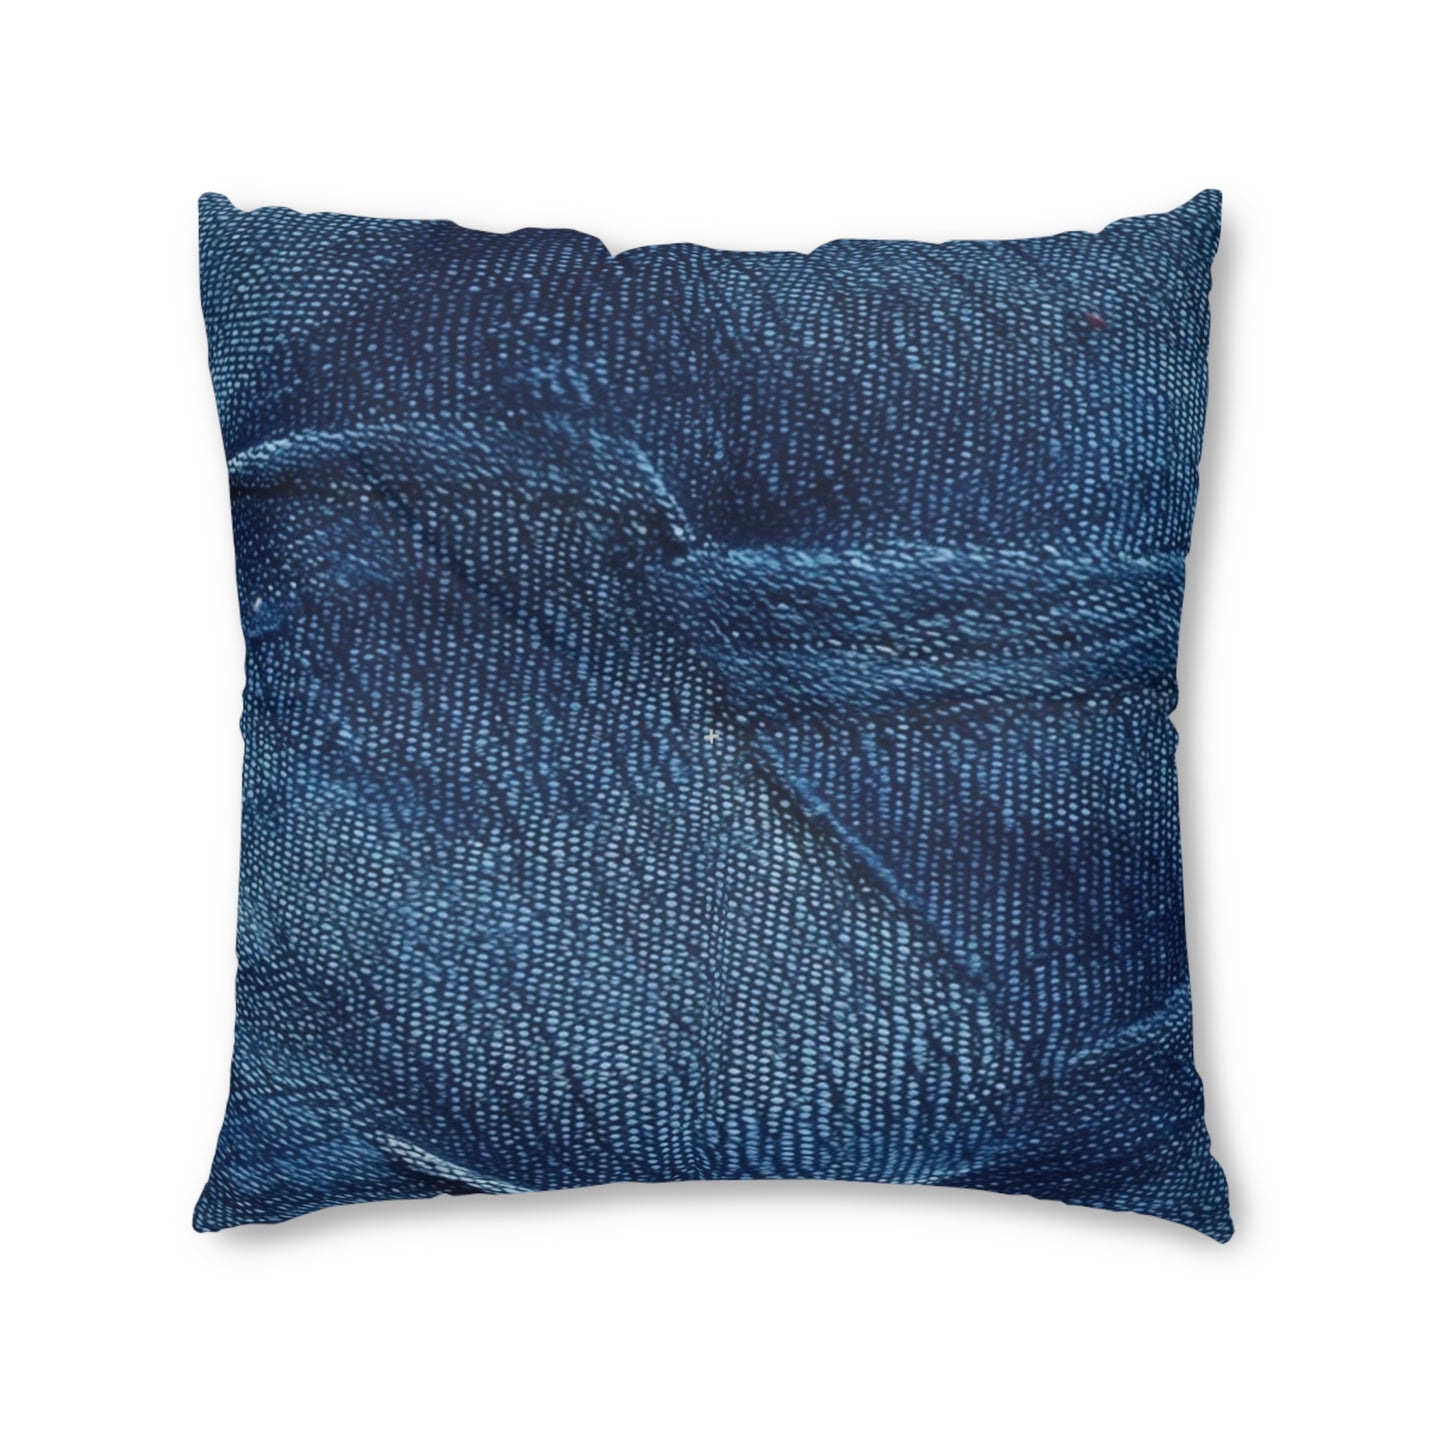 Dark Blue: Distressed Denim-Inspired Fabric Design - Tufted Floor Pillow, Square